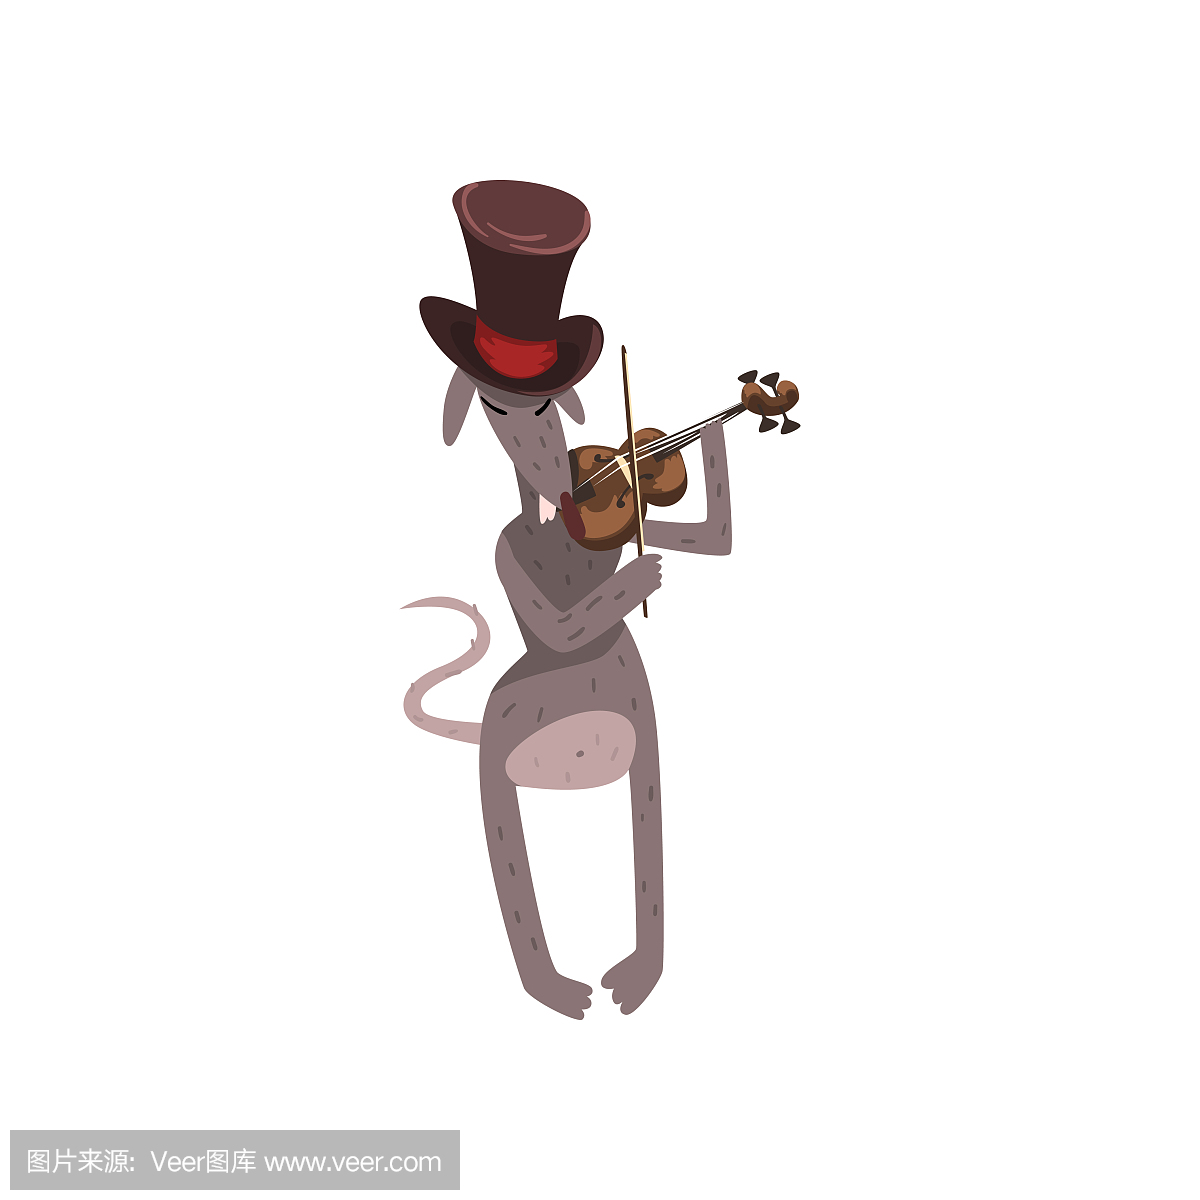 老鼠在大提琴演奏小提琴,卡通啮齿动物字符与